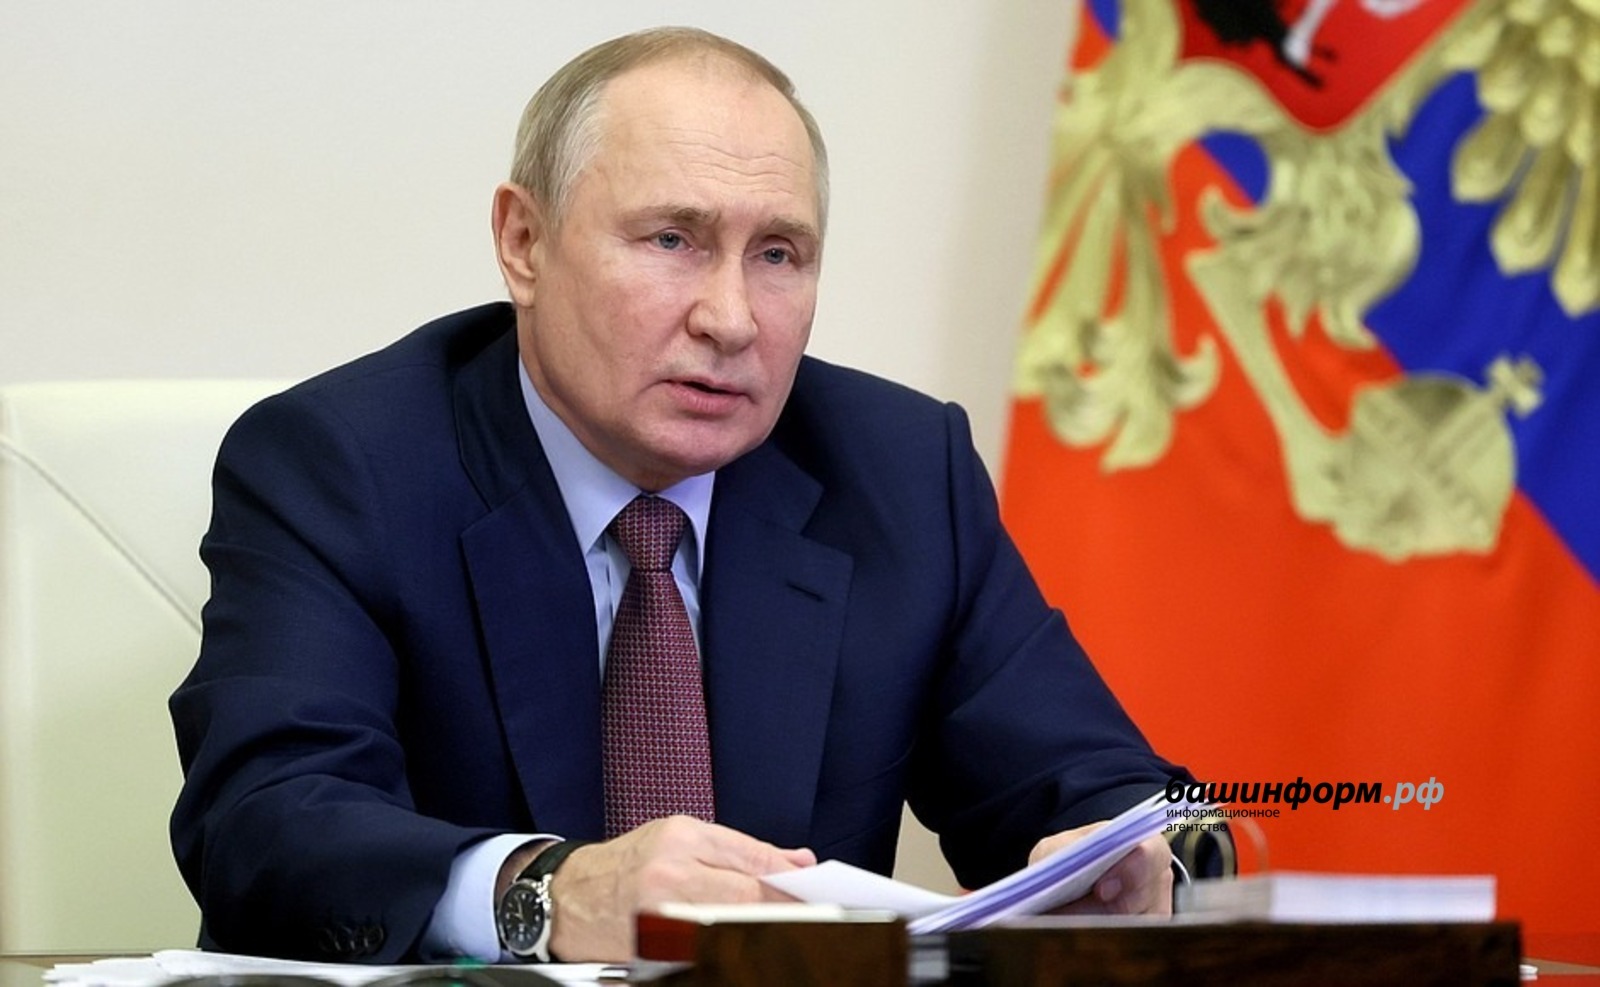 Владимир Путин сообщил о старте строительства межвузовского кампуса в Уфе